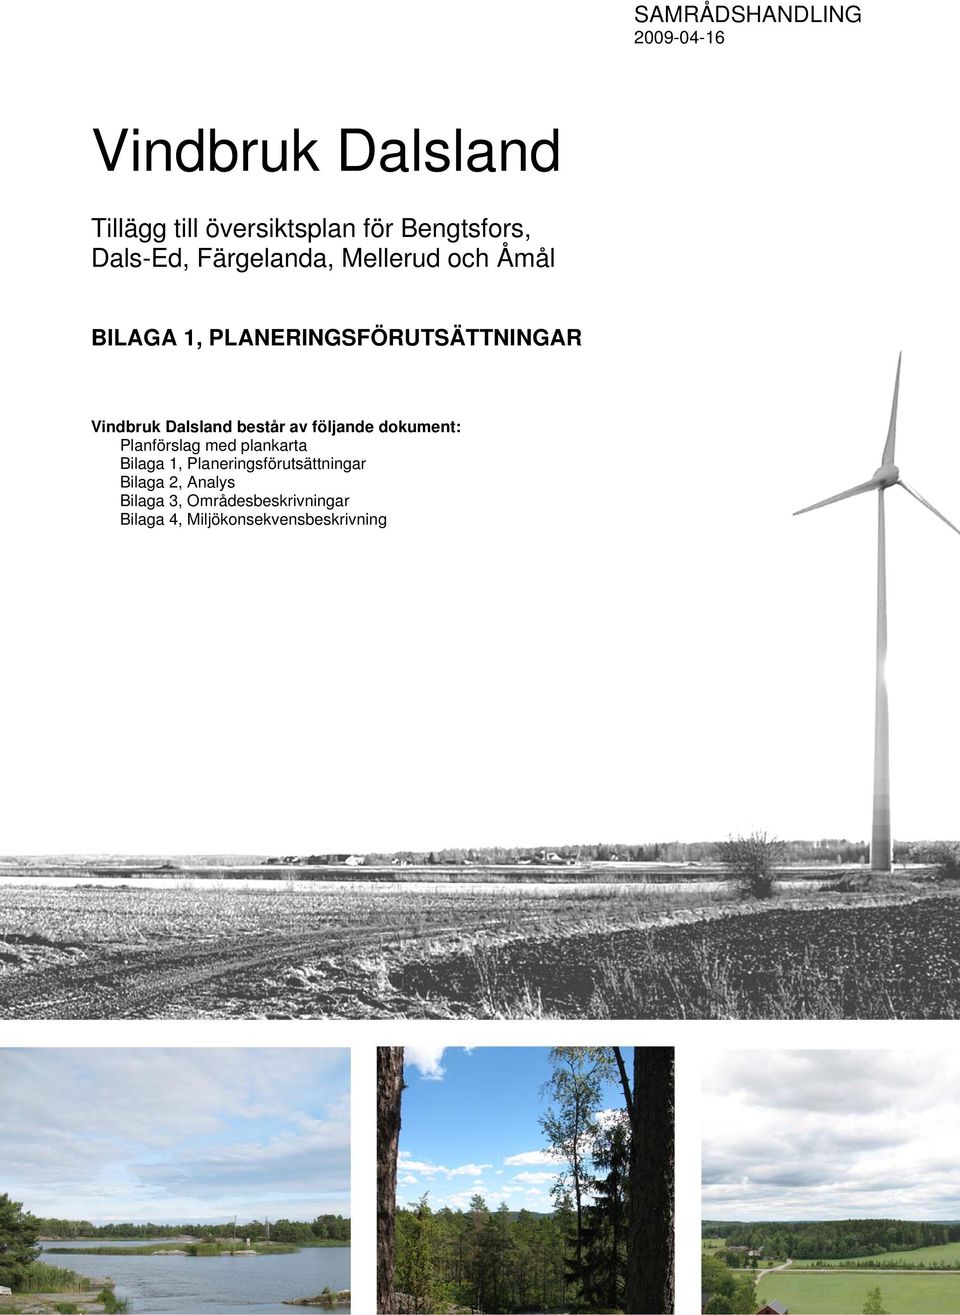 Dalsland består av följande dokument: Planförslag med plankarta Bilaga 1,